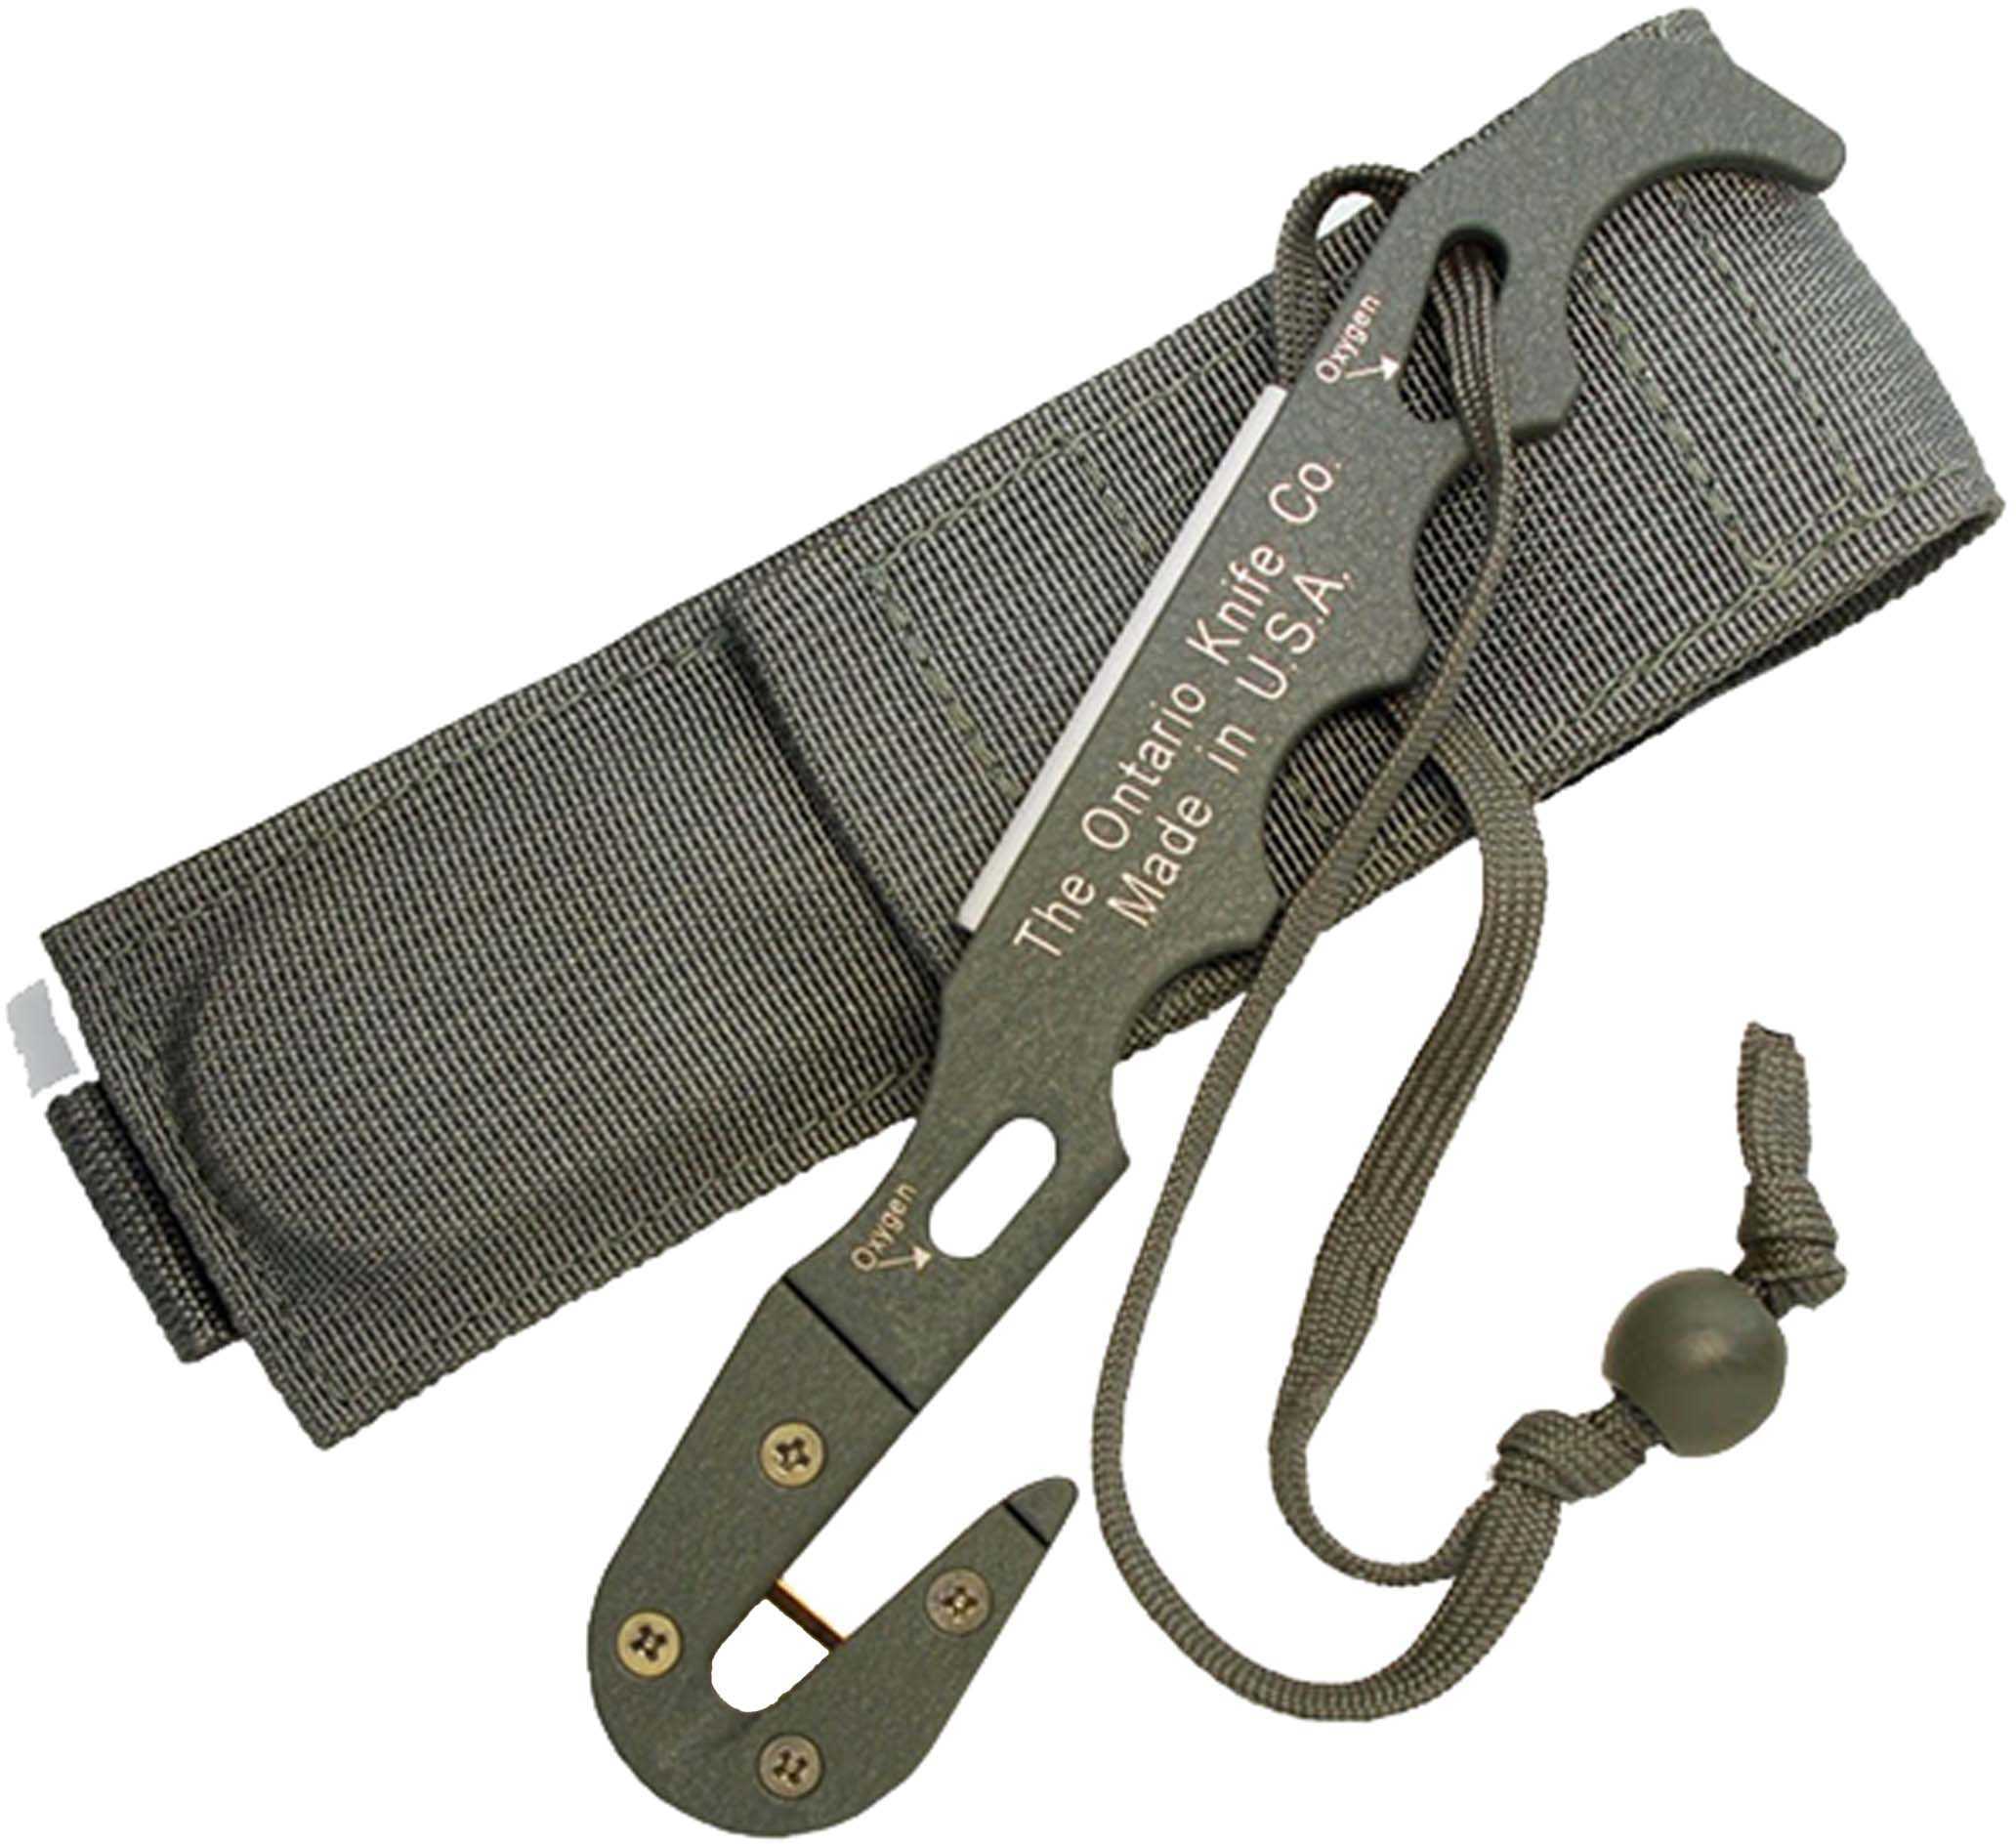 Ontario Knife Company Strap Cutter FG Model 1 w/Sheath 1406